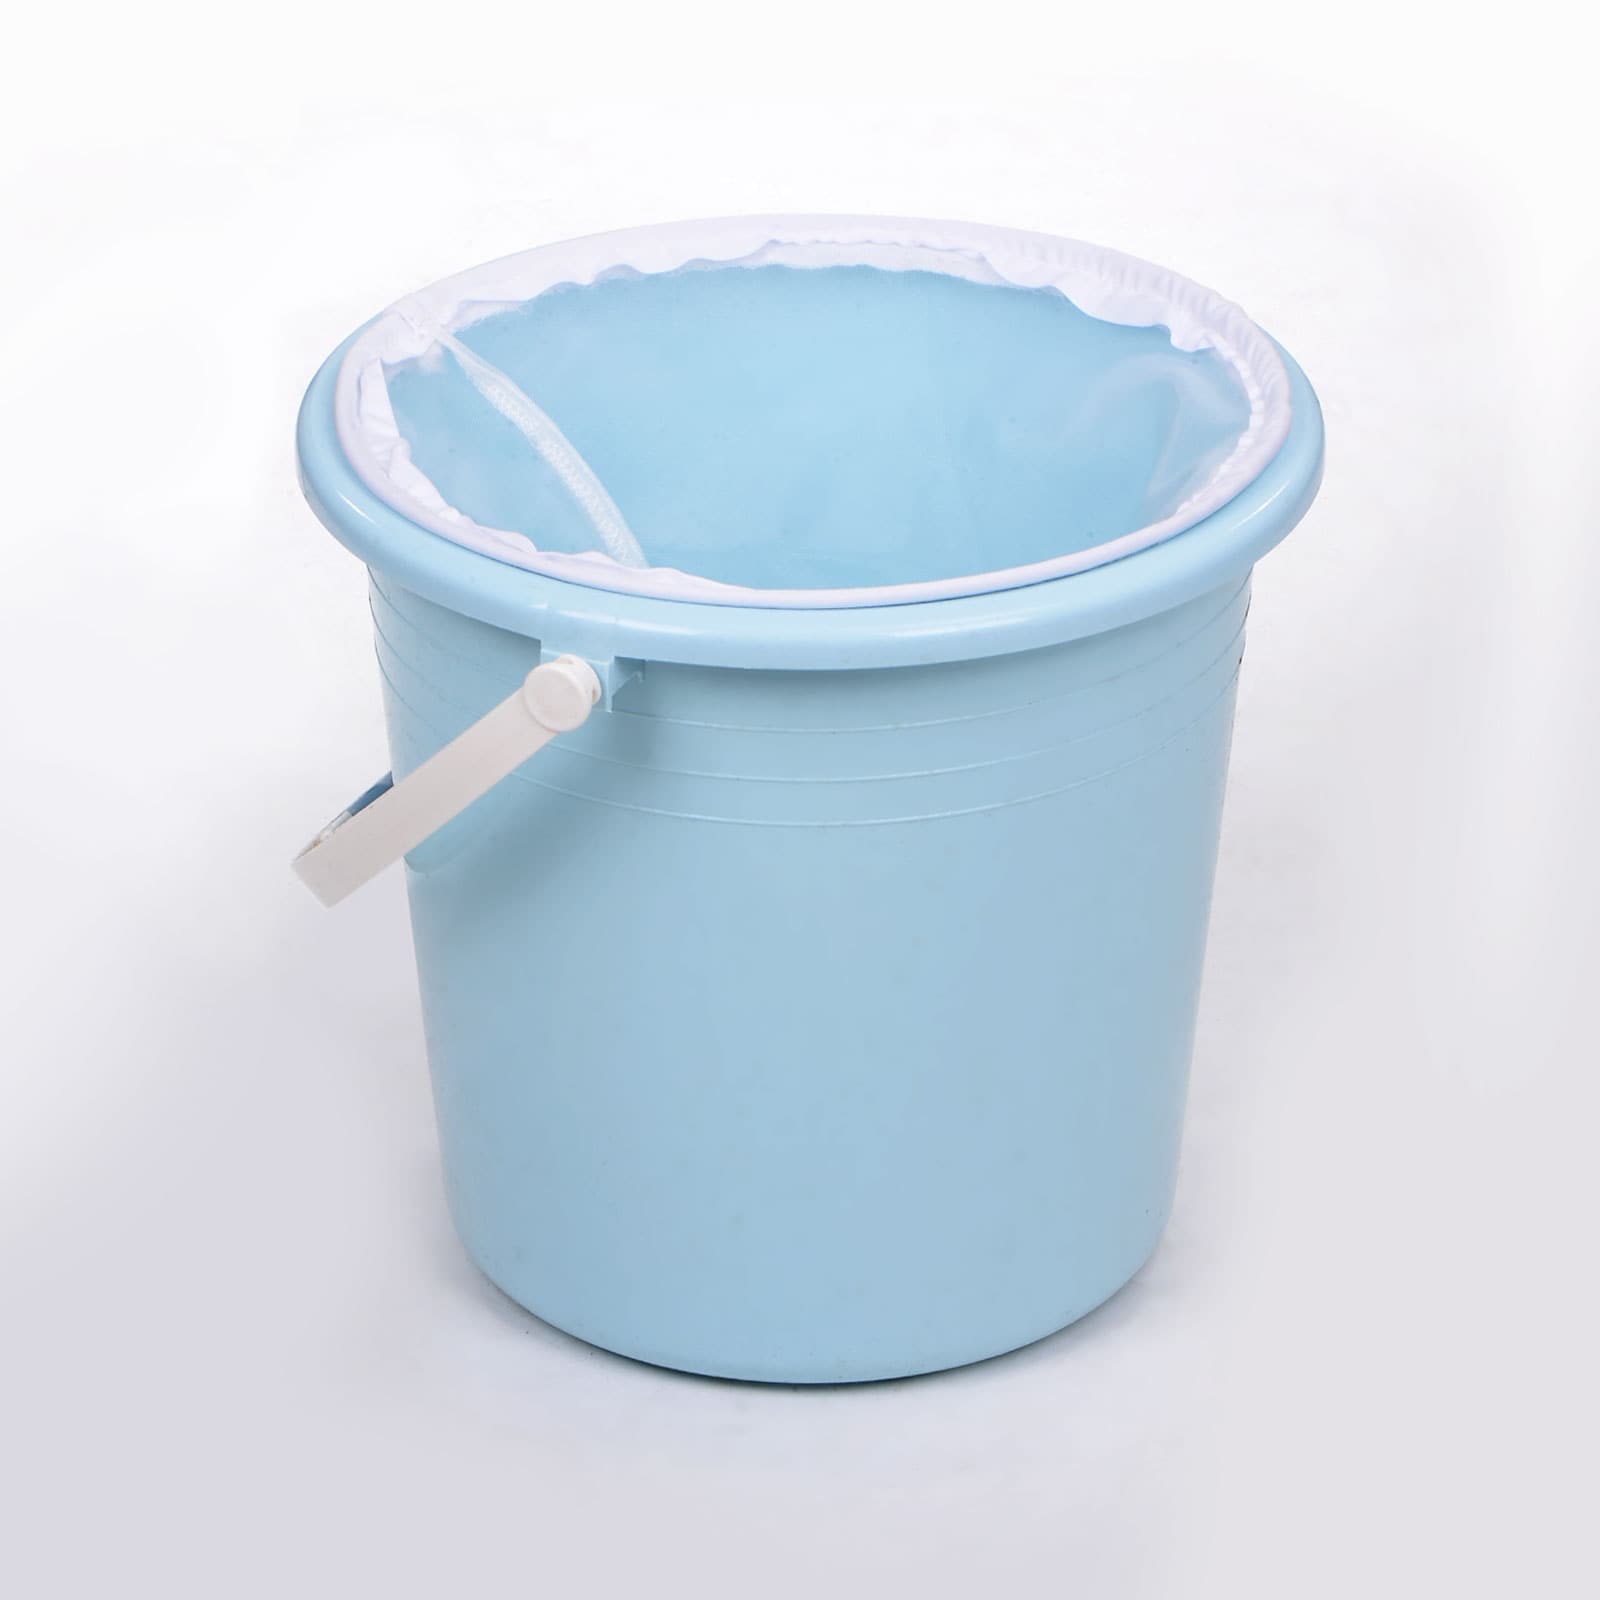 200 Mesh Paint Filter Bag 9.8" Dia Cone Shape Nylon Strainer for Filtering - White